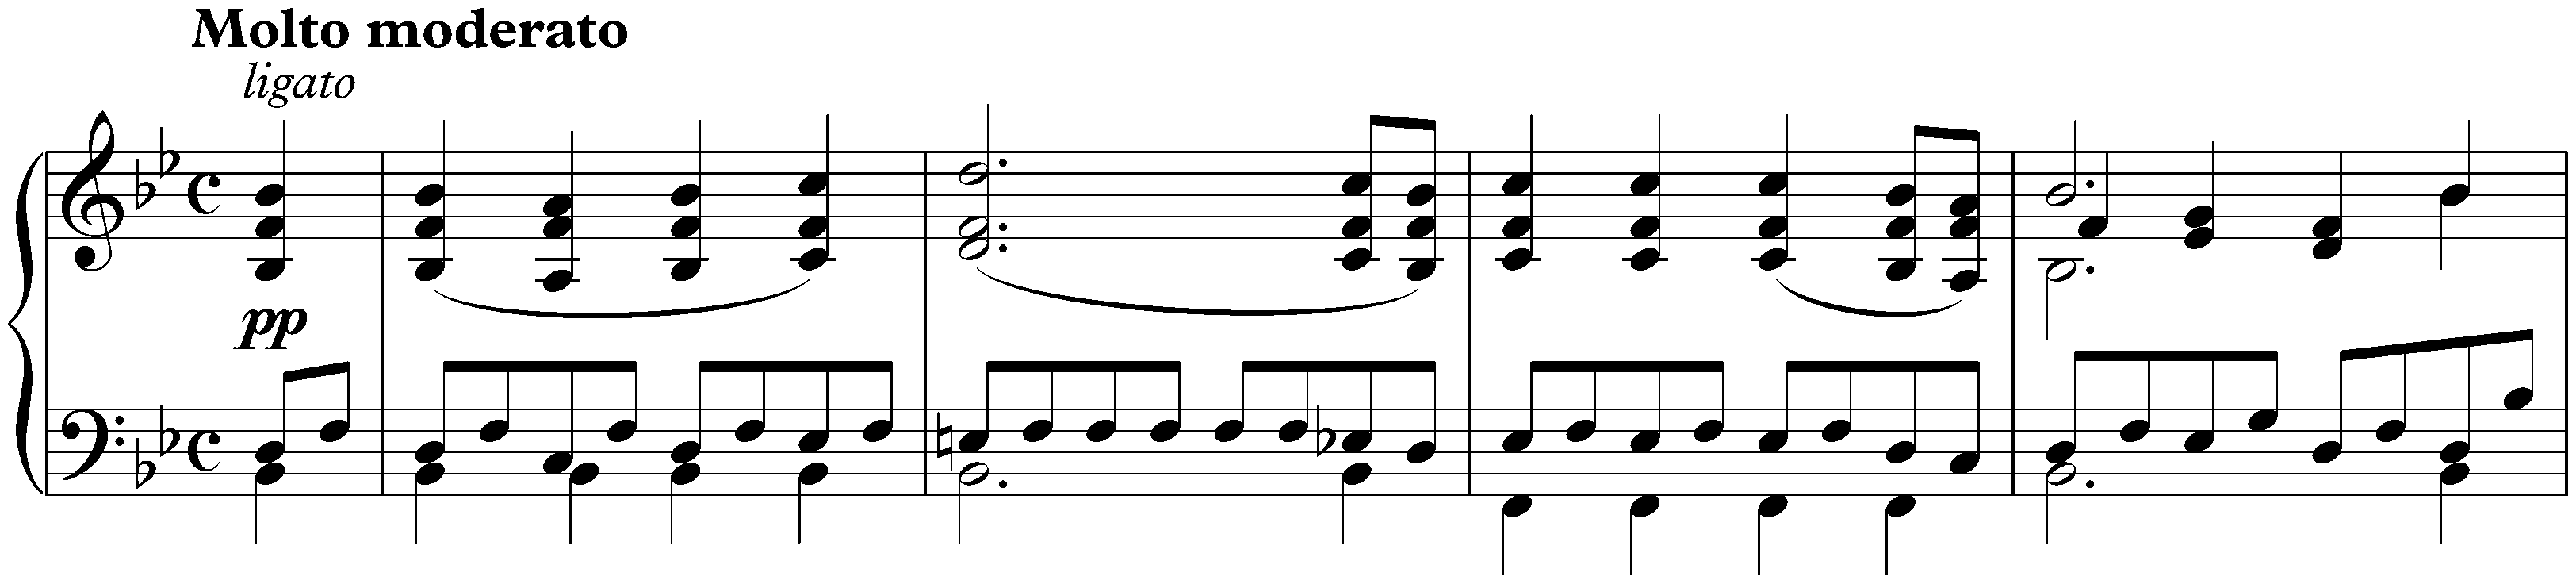 Sonata in B-flat major, D 960; 1. Molto moderato